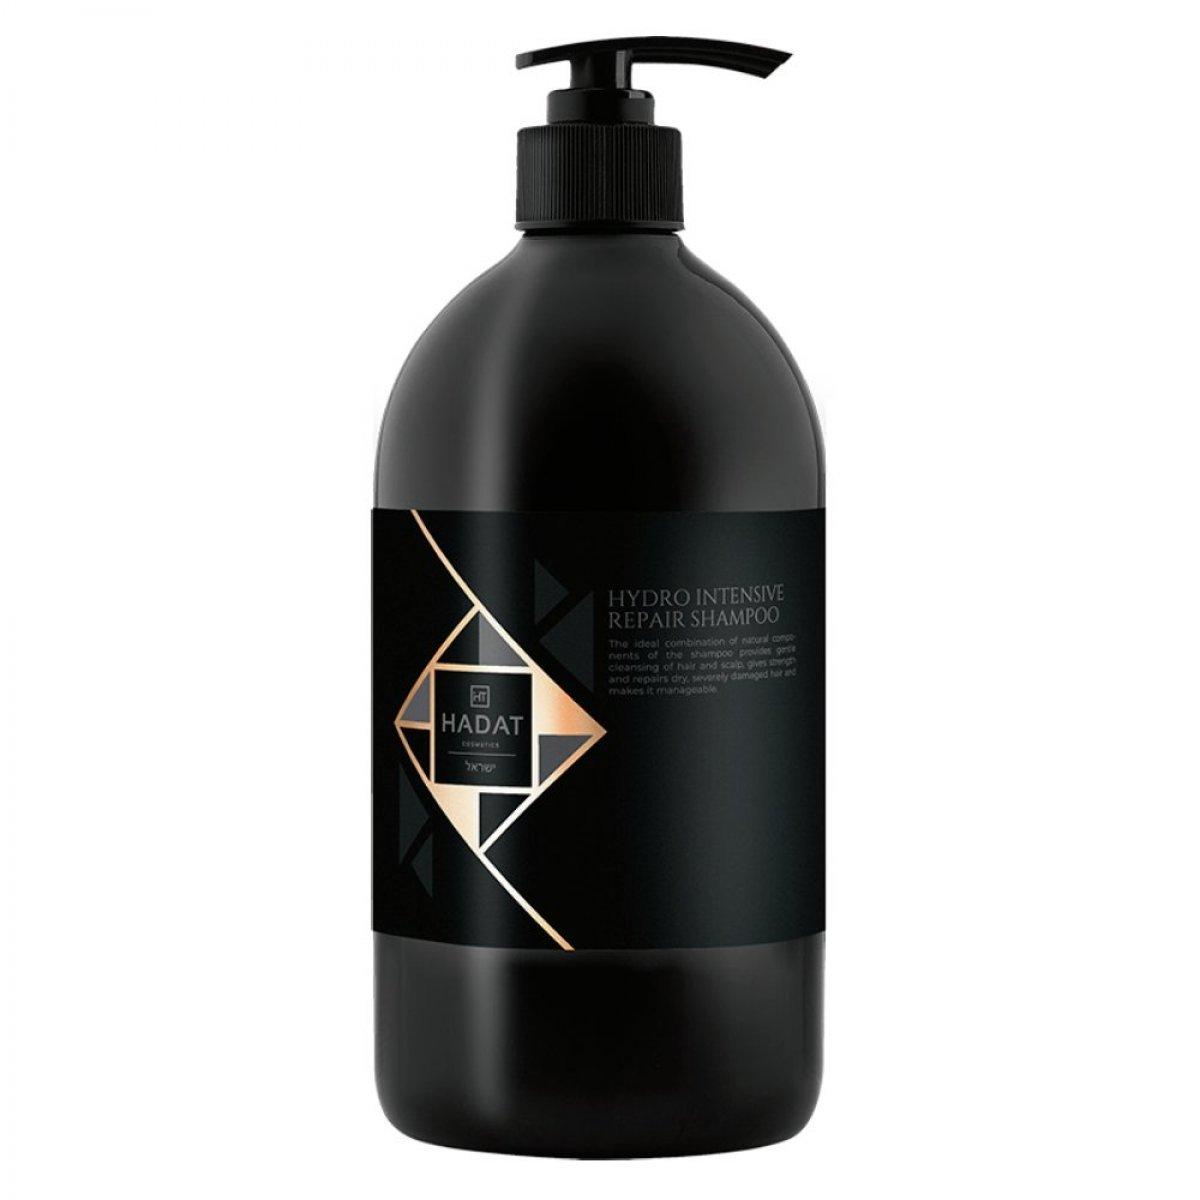 Відновлюючий Шампунь для Волосся Хадат Repair Shampoo - Hadat Hydro Intensive Repair Shampoo 250 ml